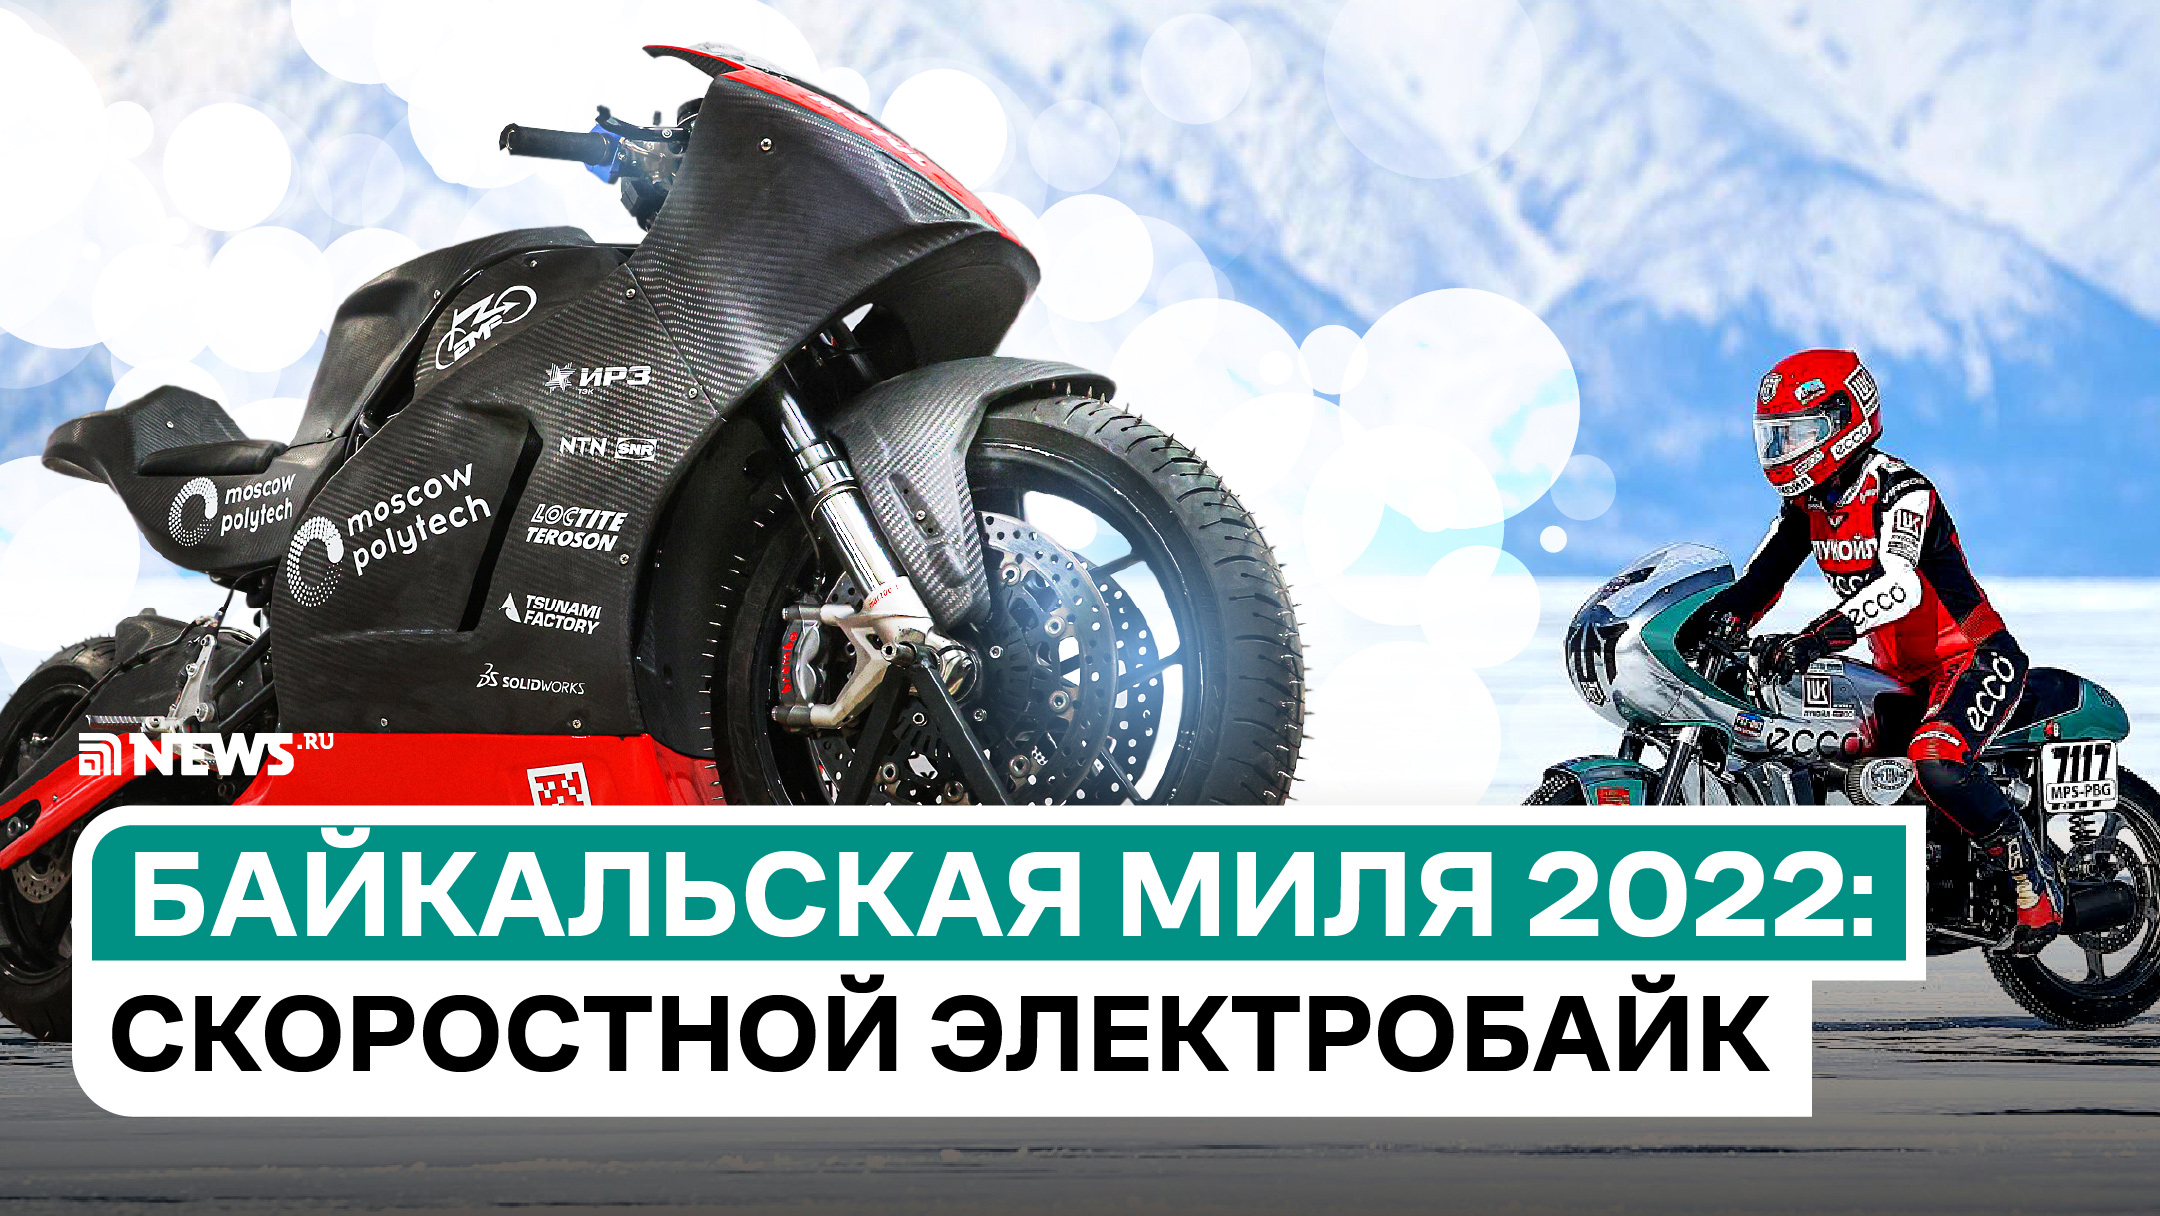 «Байкальская миля 2022»: как устроен электромотоцикл для гонки на льду?